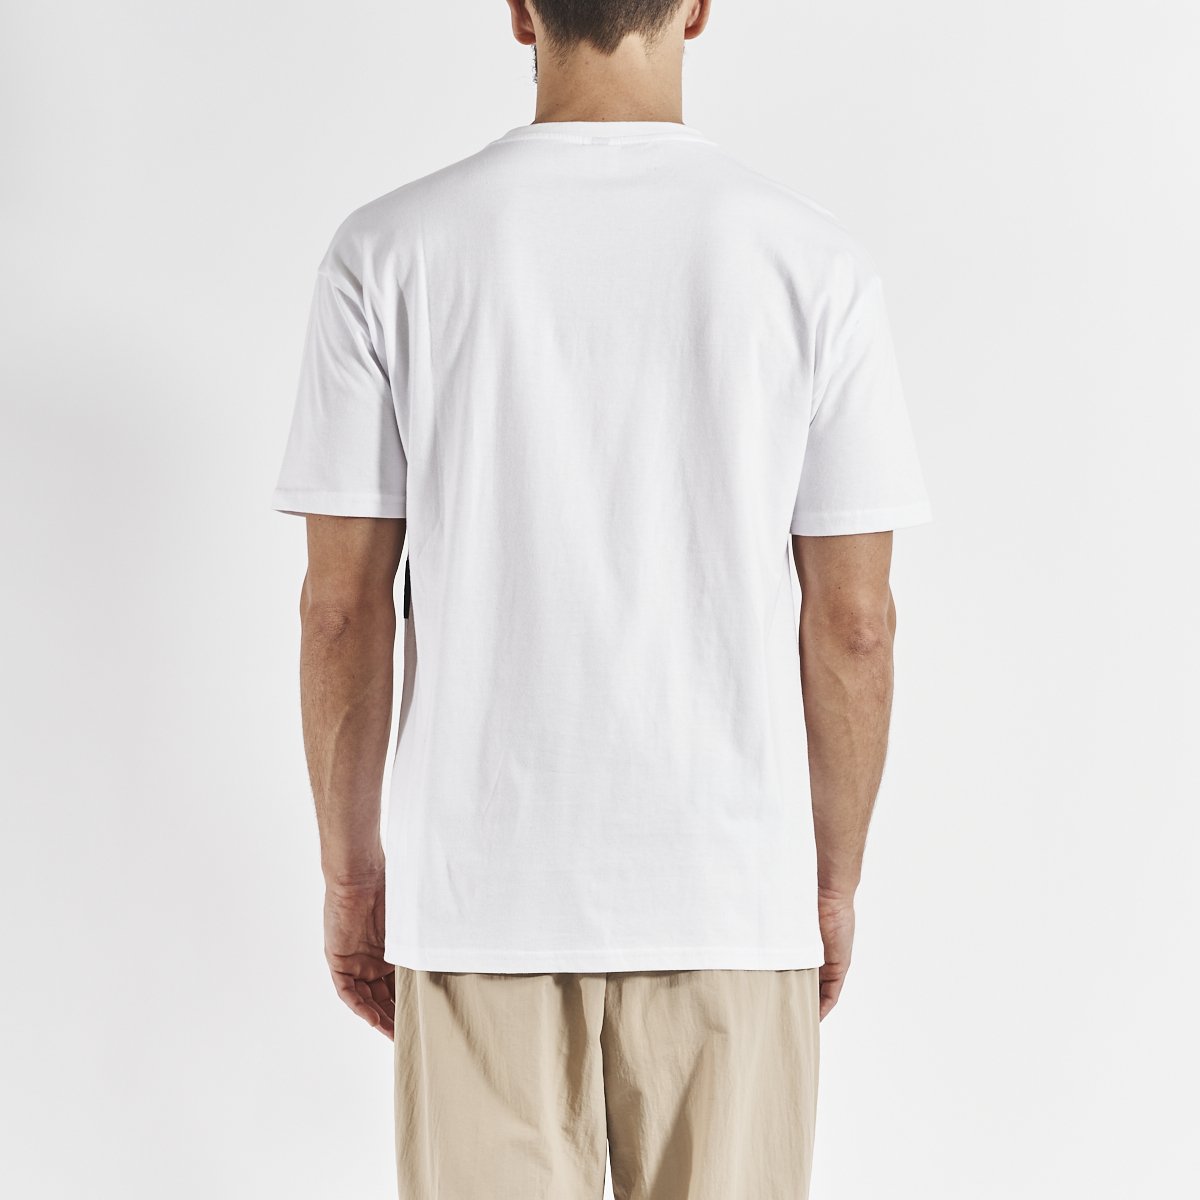 Camiseta Efto hombre blanco - Imagen 3